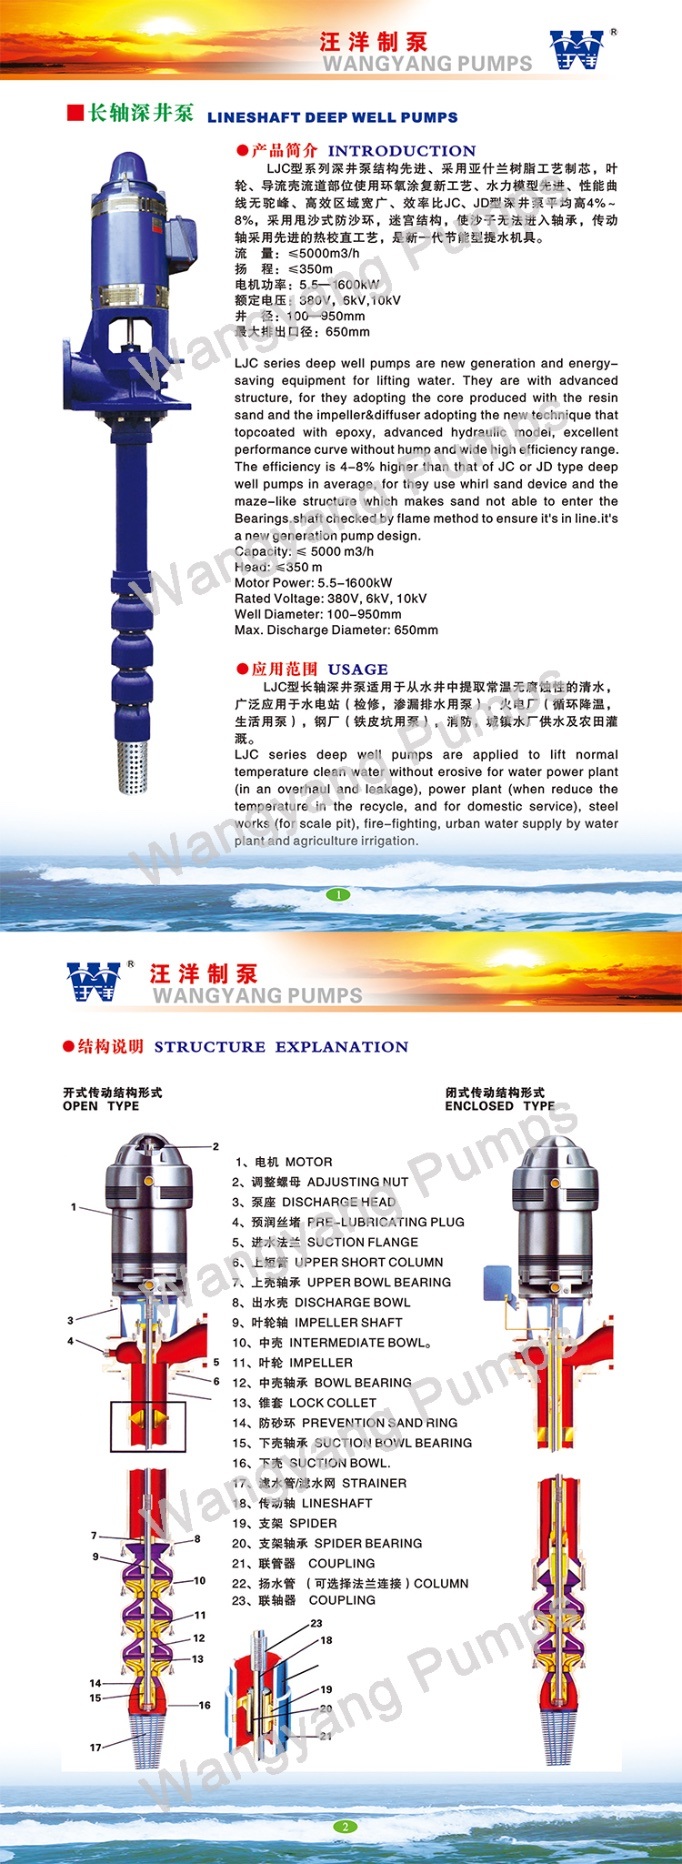 Electric Vertical Turbine Pump Set Pressure Tank & Electric Control Cabinet